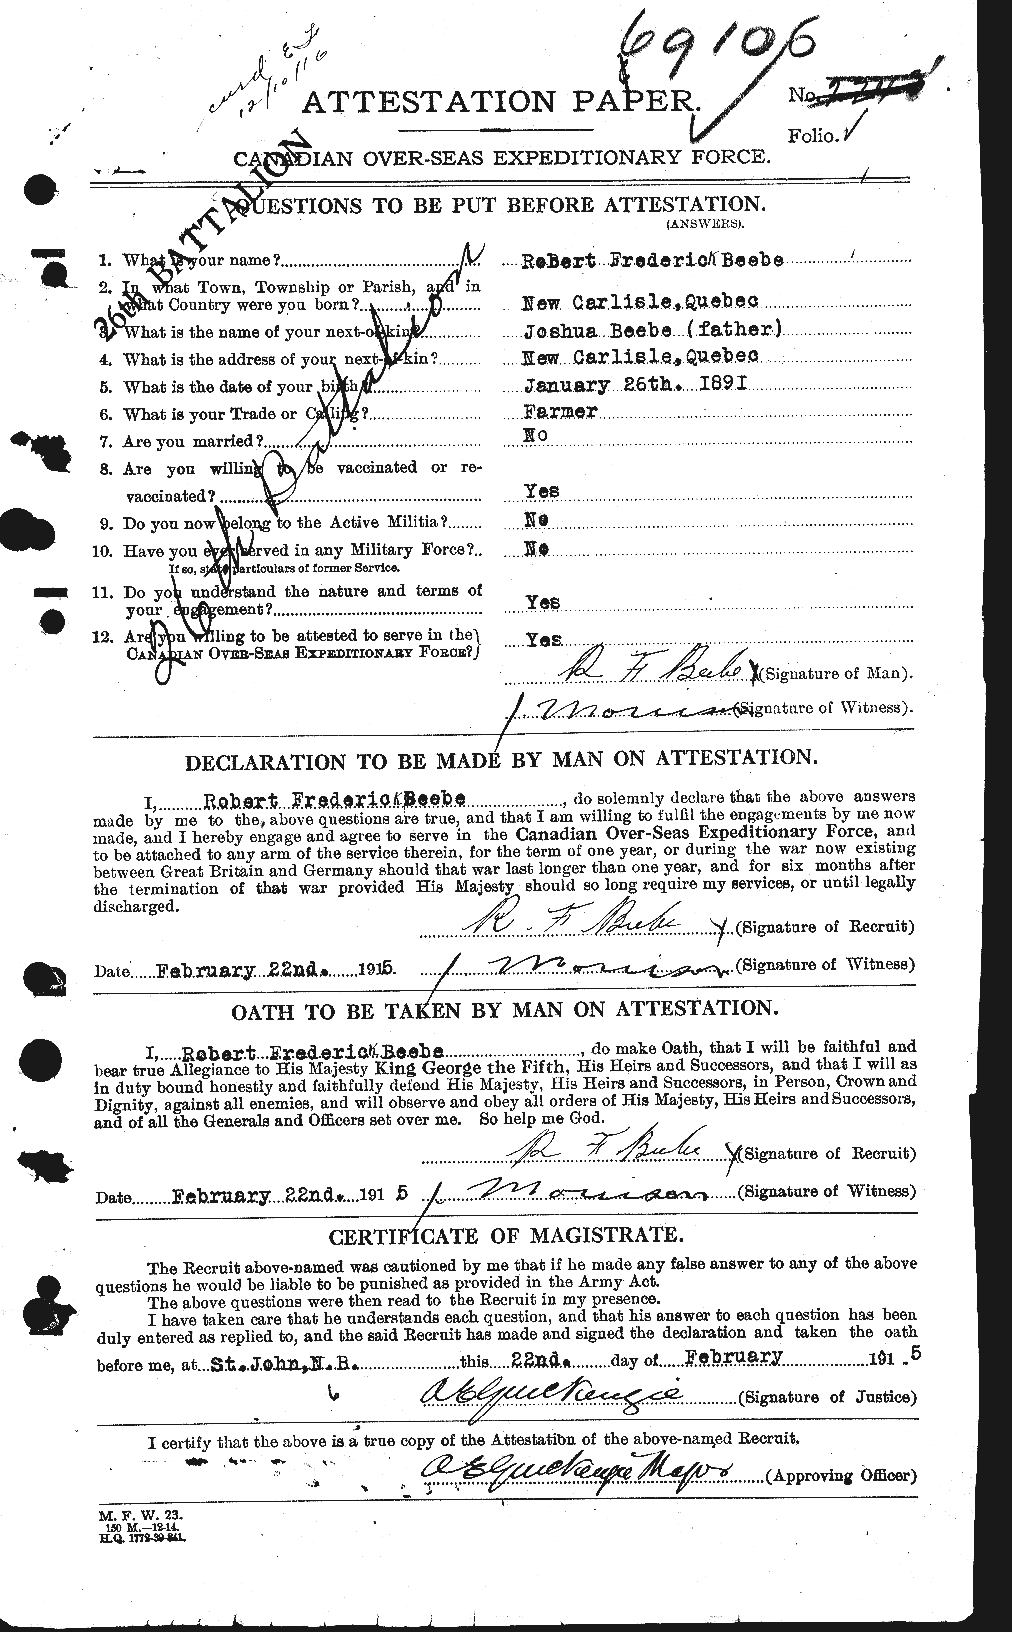 Dossiers du Personnel de la Première Guerre mondiale - CEC 236302a